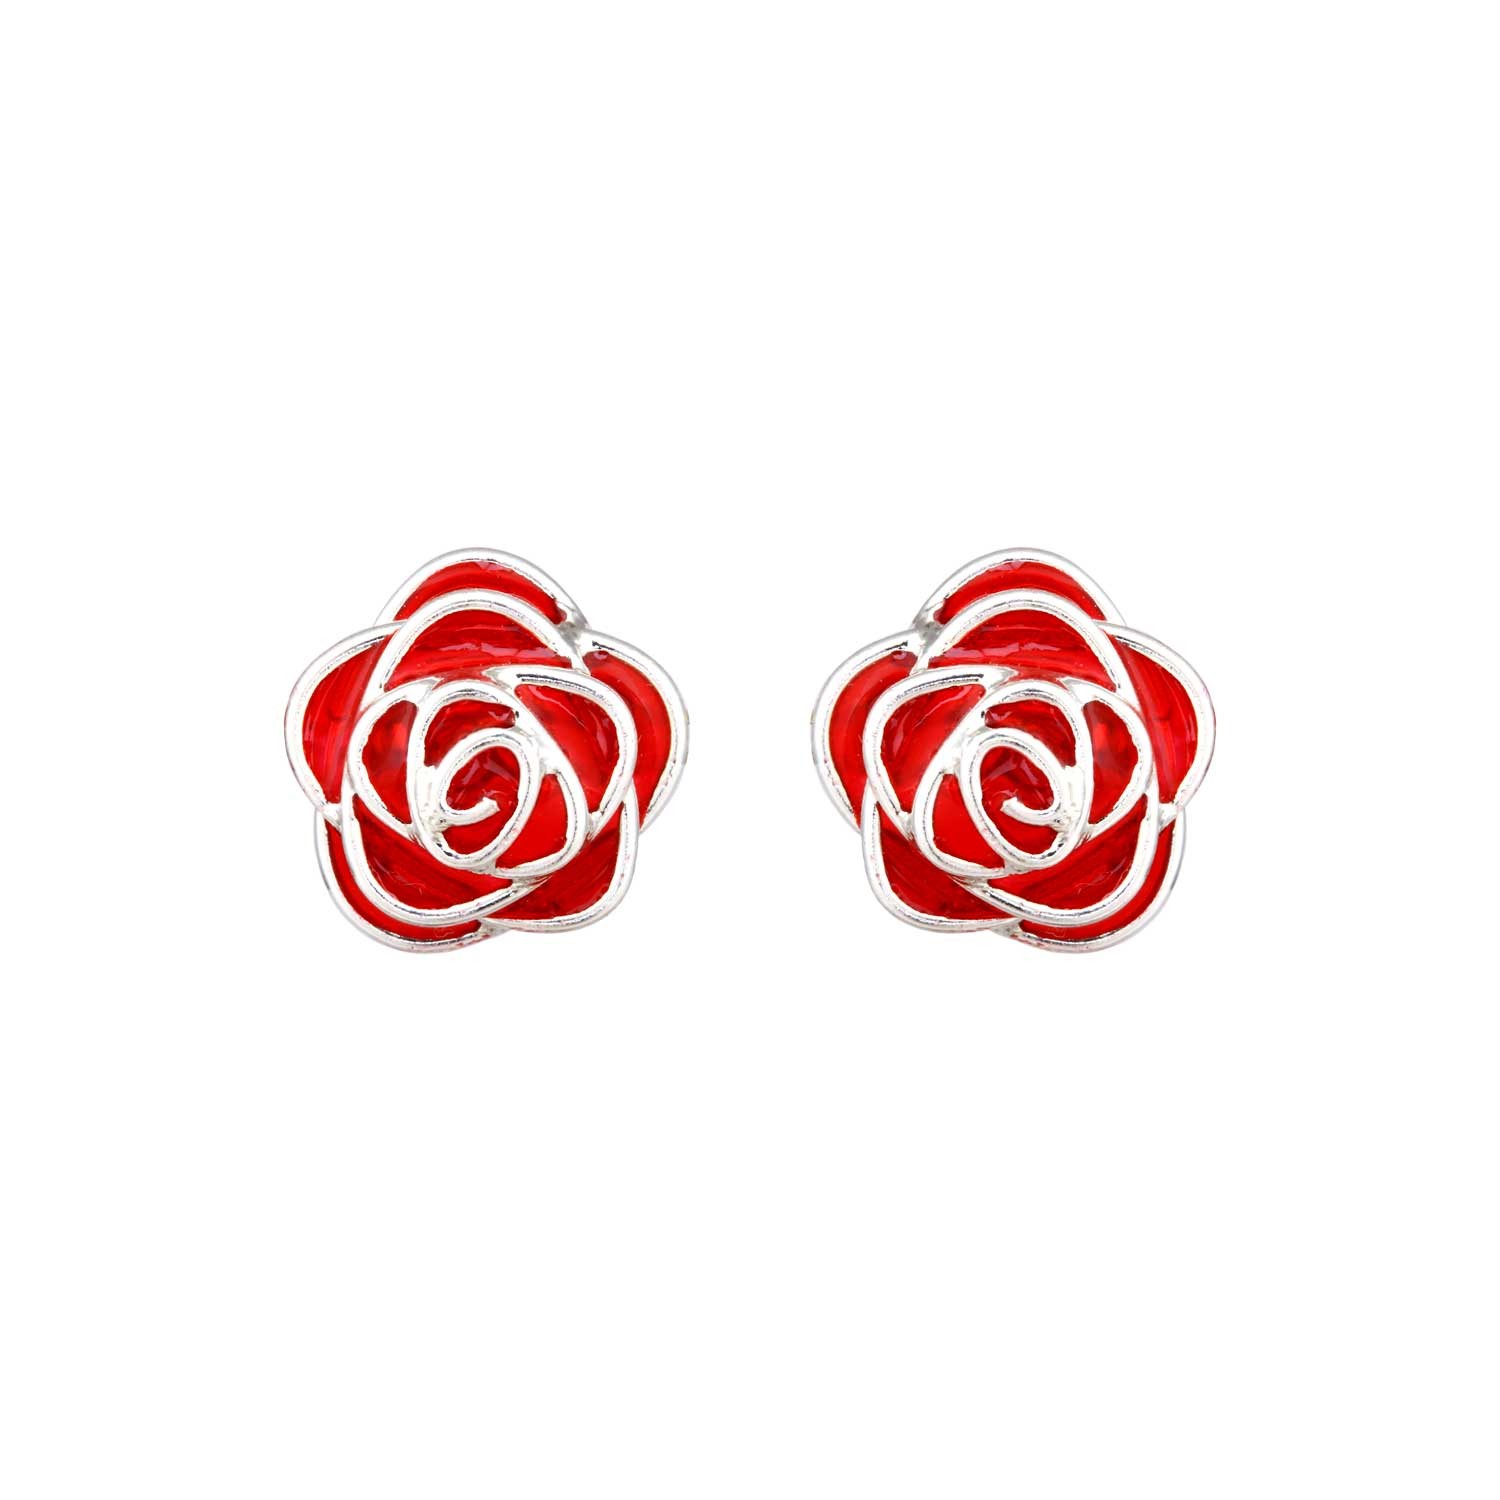 Red Enamel Rose Earrings Stud for Women and Girls